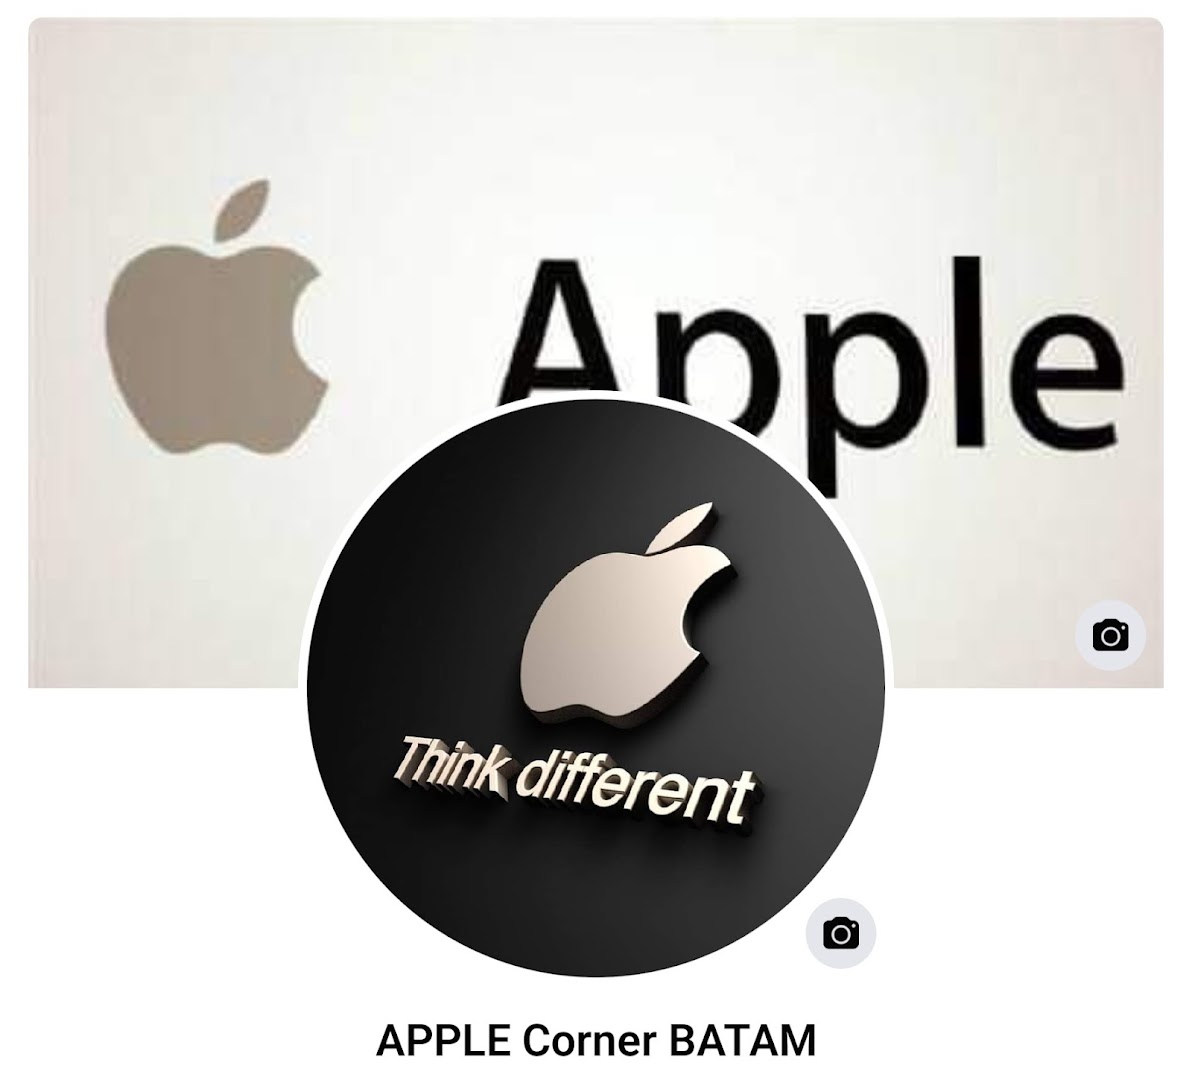 Gambar Apple Corner Batam